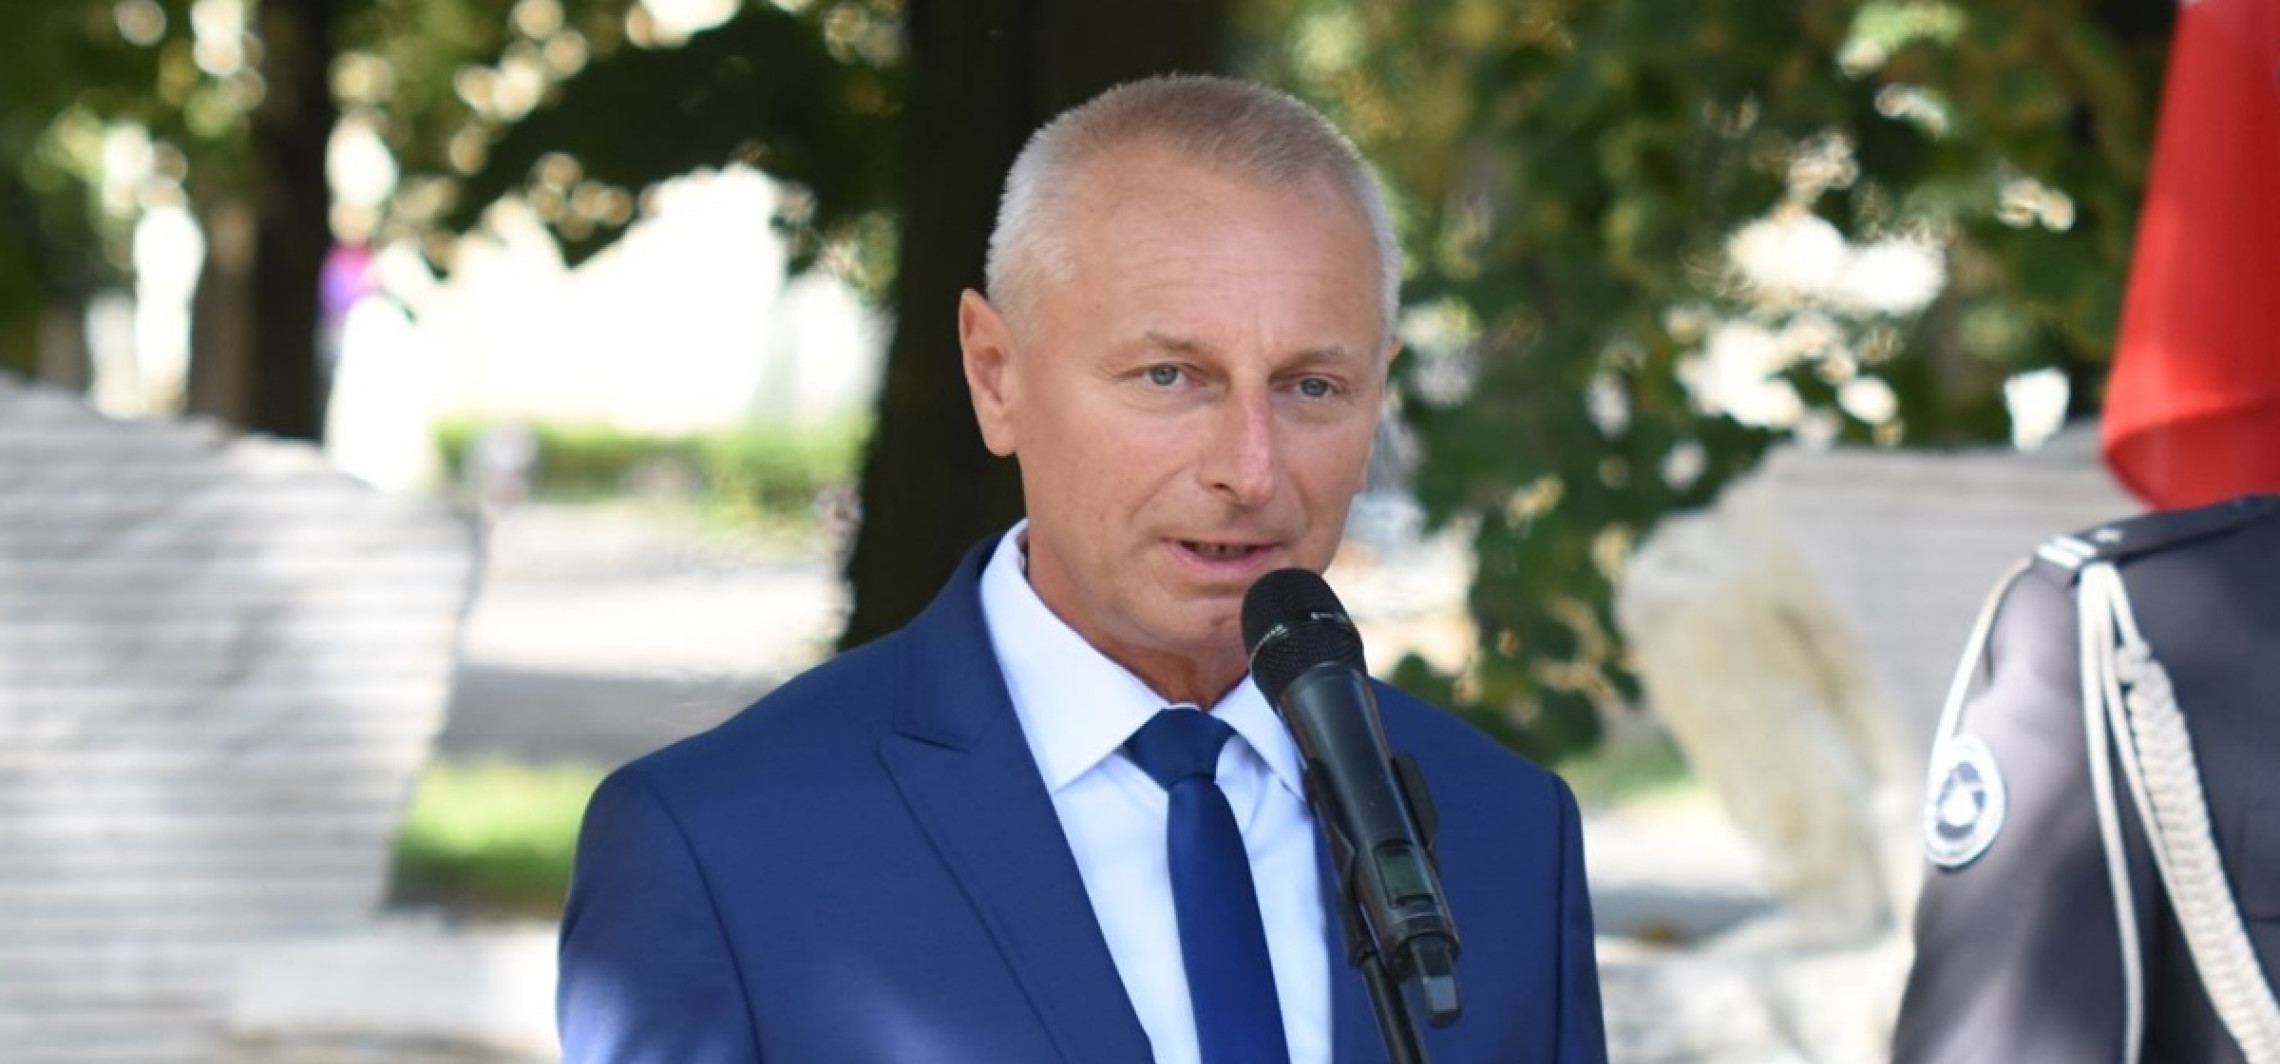 Inowrocław - Wyborcza: Ryszard Brejza do senatu